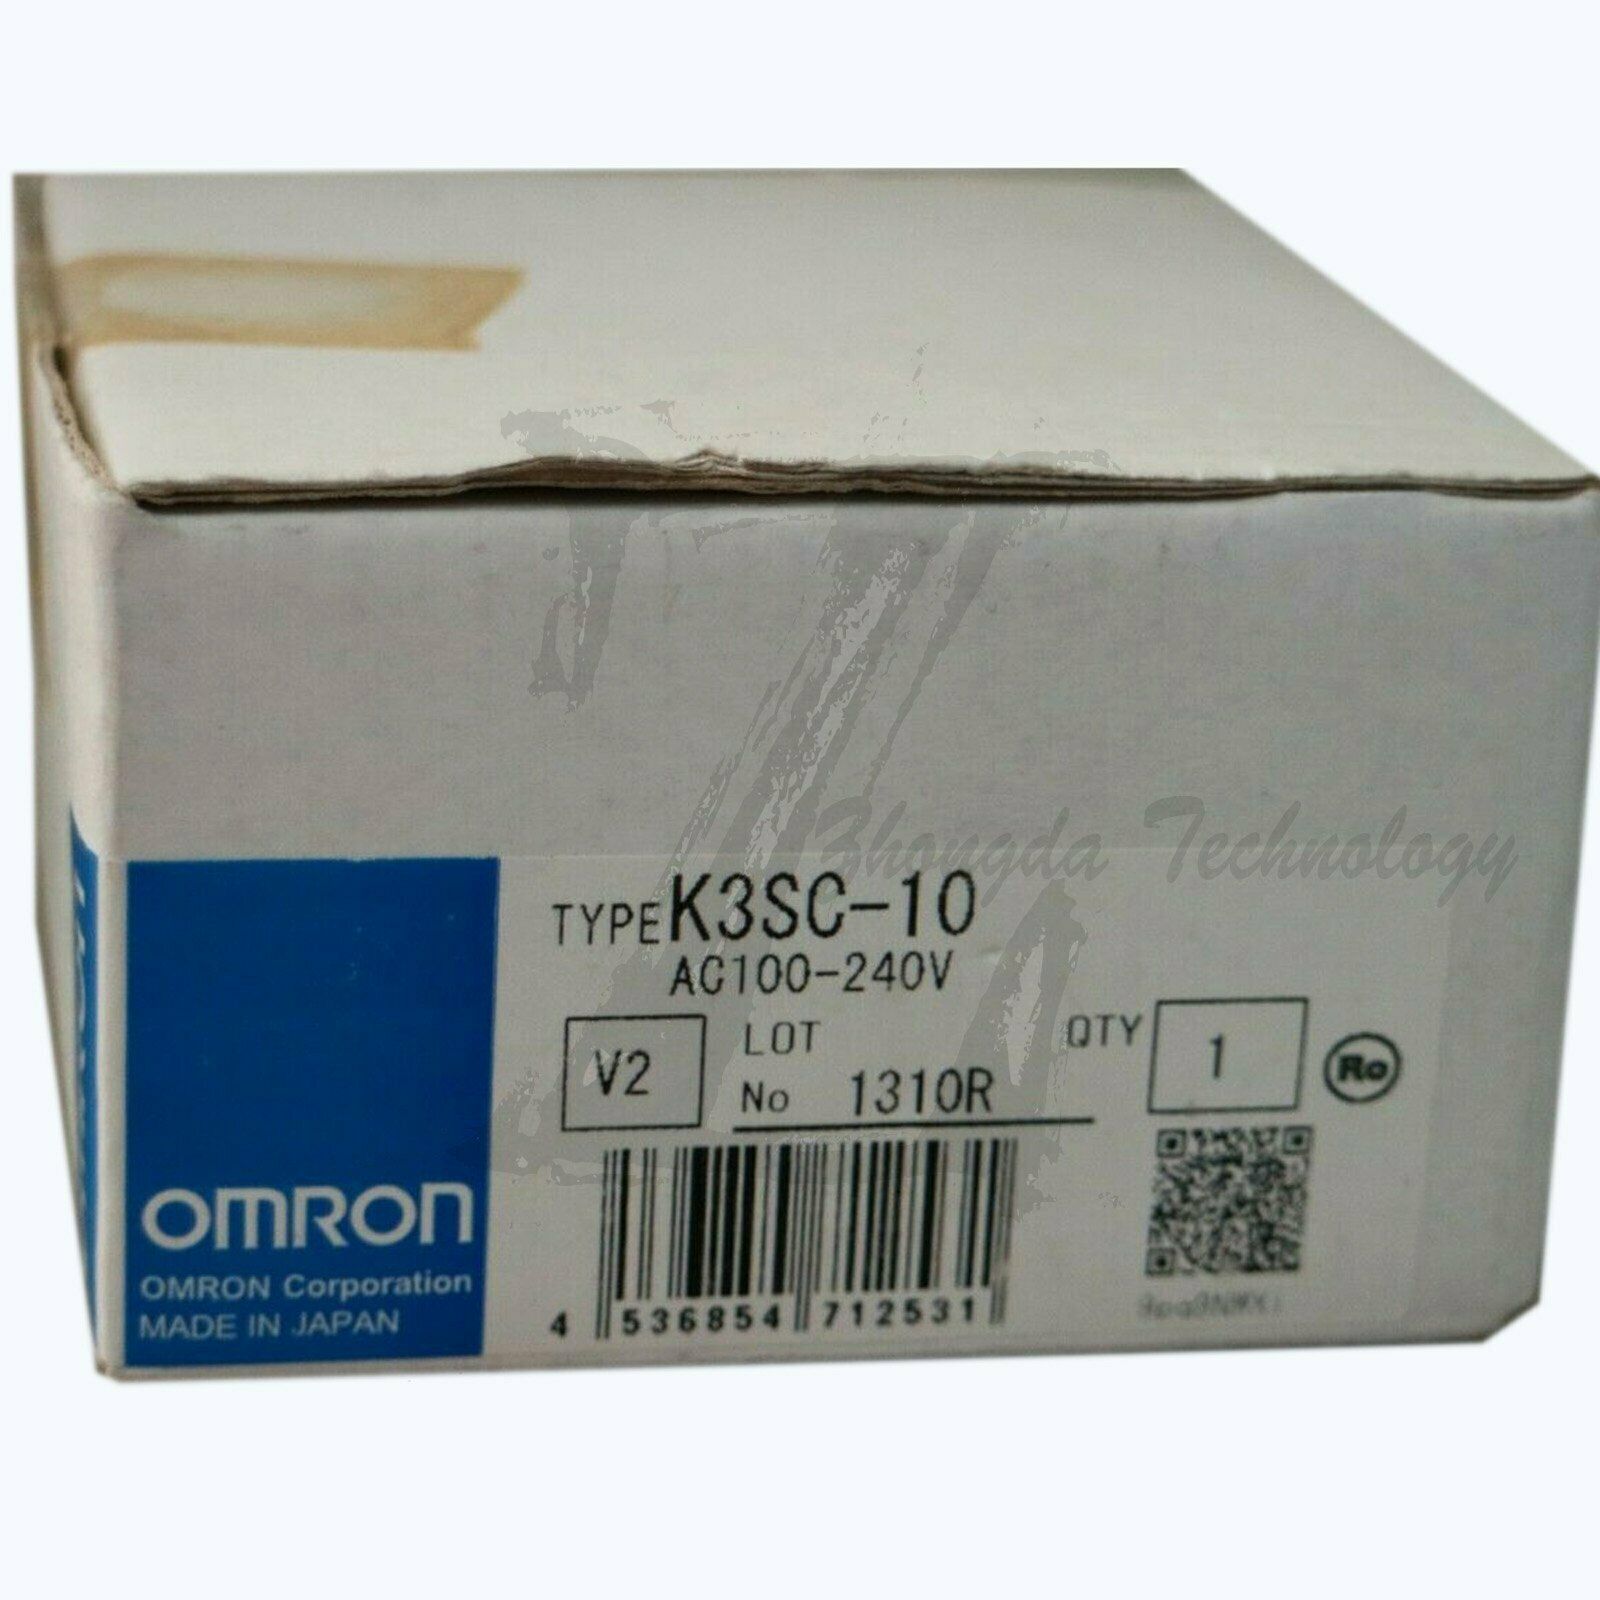 NEW Omron communication converter K3SC-10